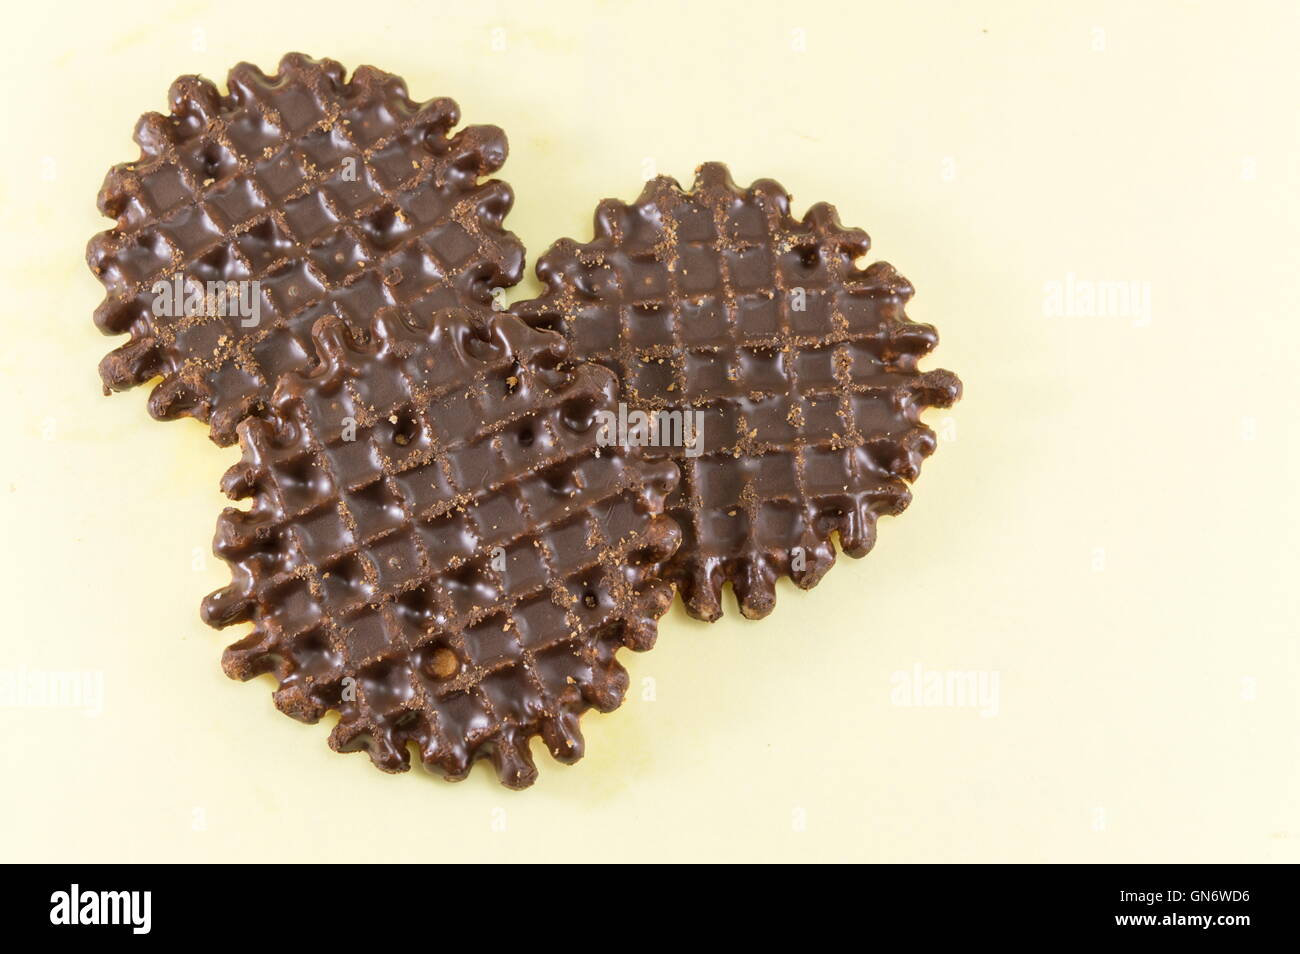 Ricoperta di cioccolato round biscotti fatti in casa su sfondo giallo Foto Stock